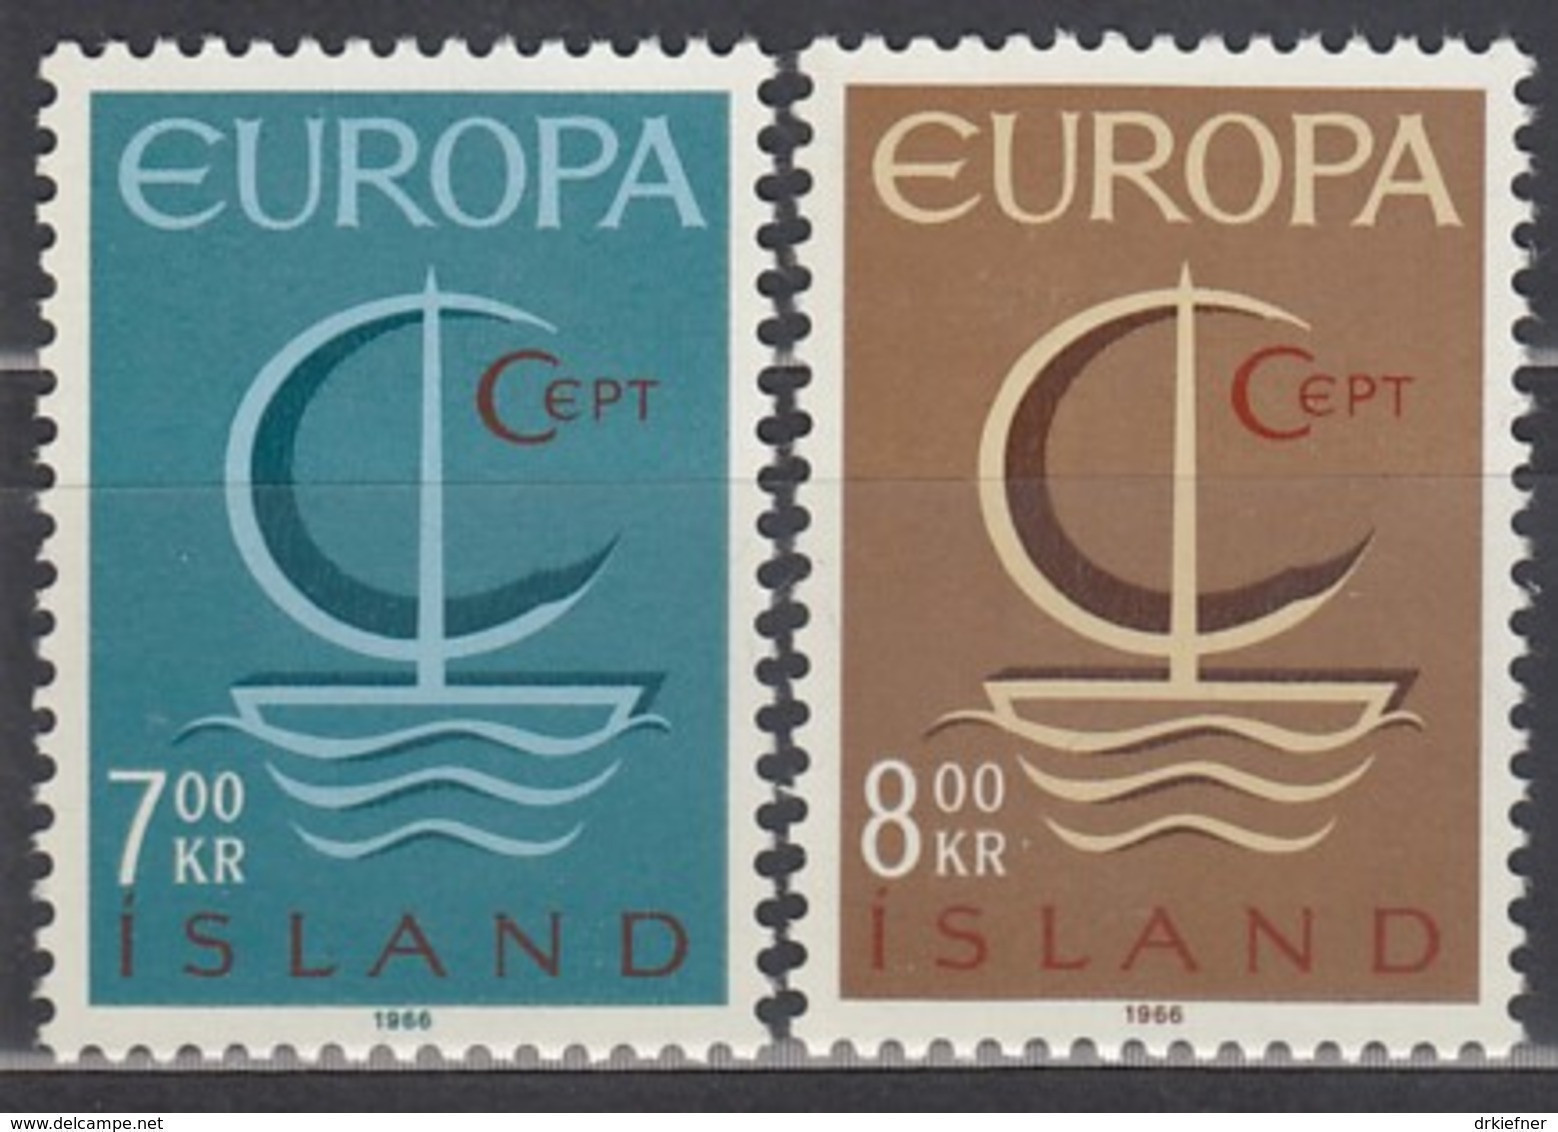 ISLAND  404-405, Postfrisch **, Europa CEPT 1966 - Nuevos